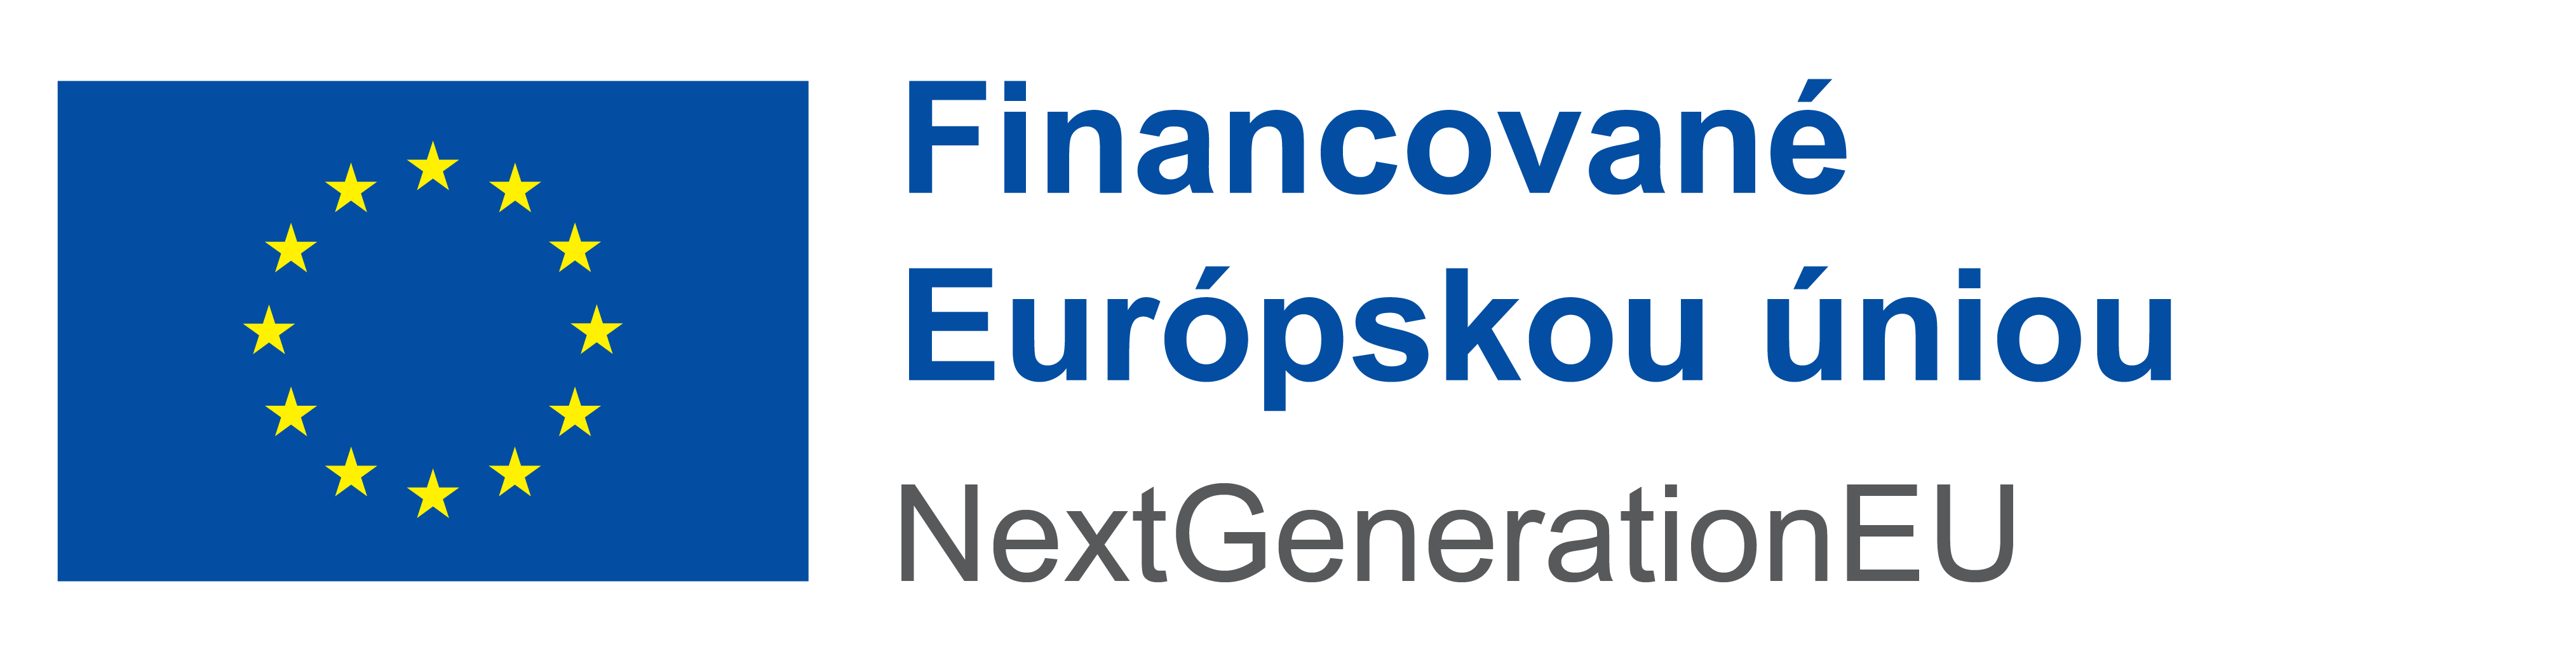 Štipendiá NŠP sú financované Európskou úniou - NextGenerationEU